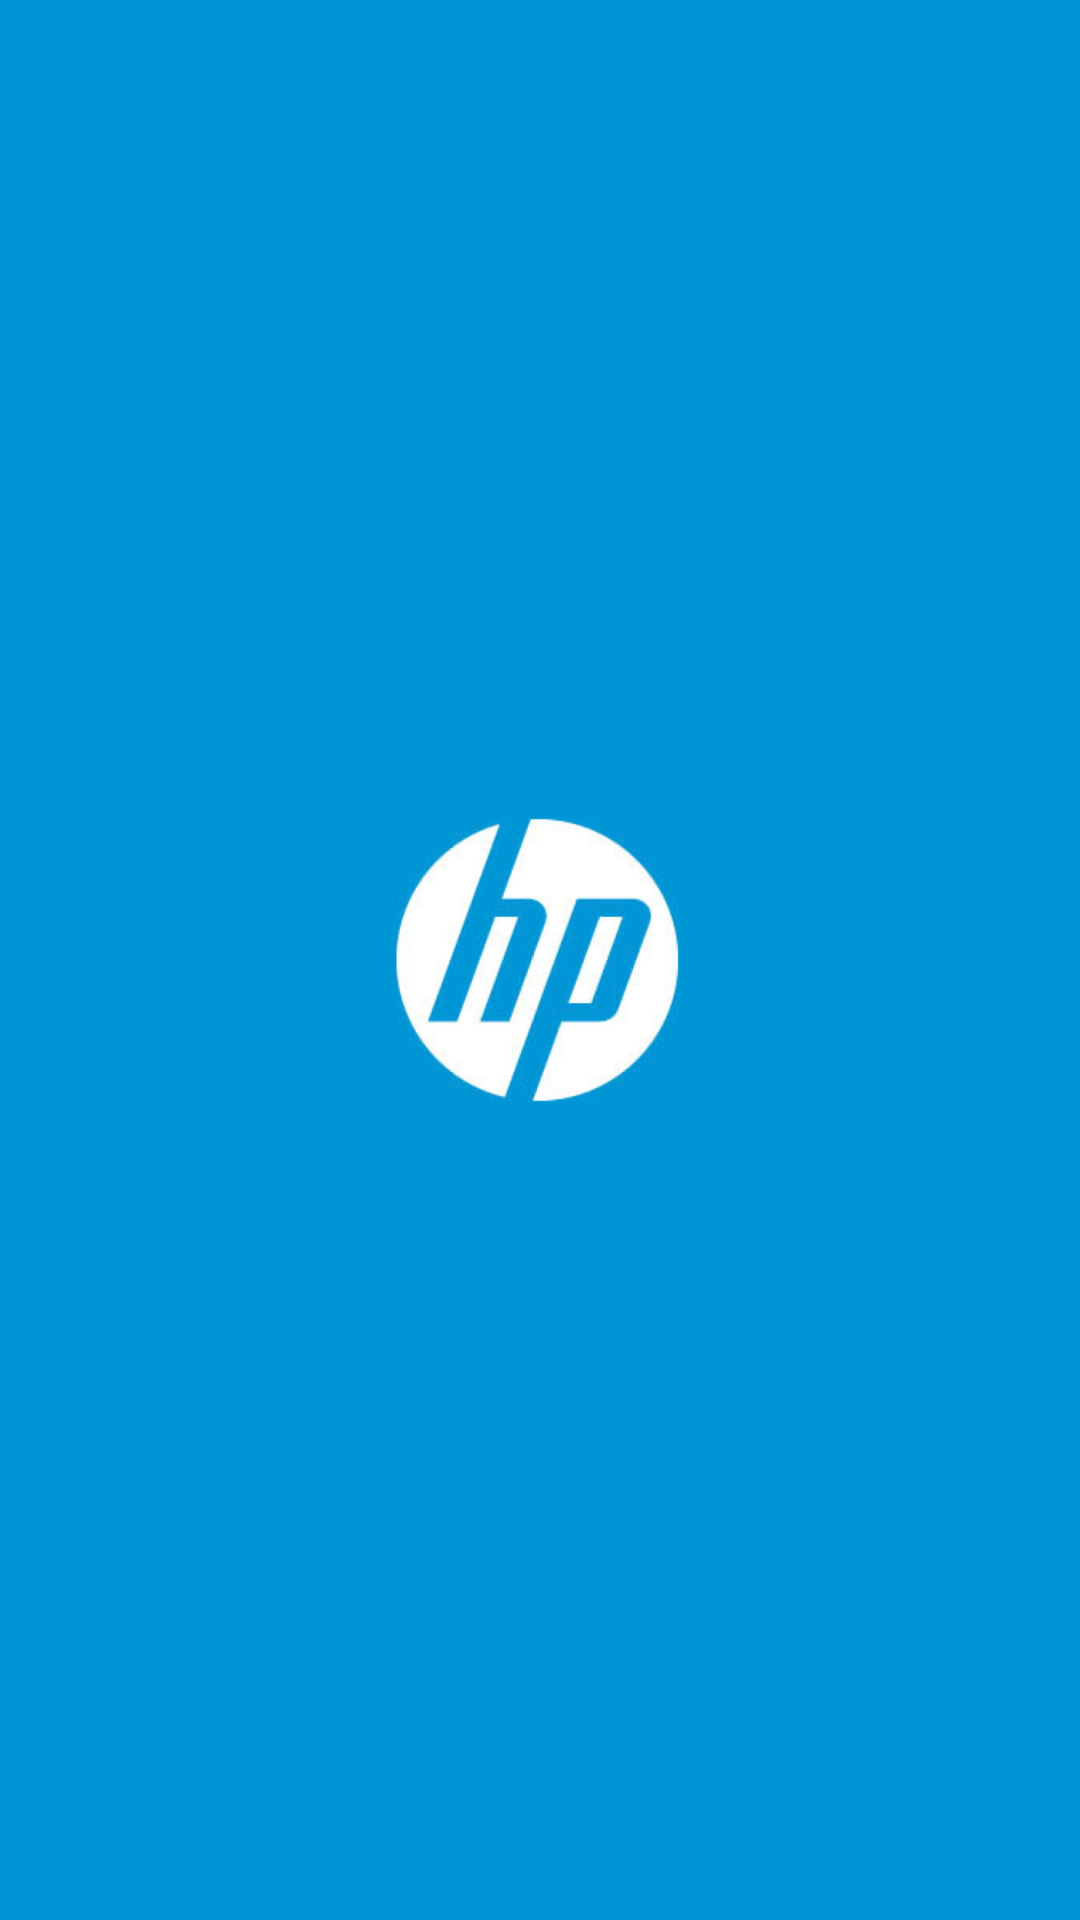 Hewlett-Packard Logo wallpaper 1080x1920